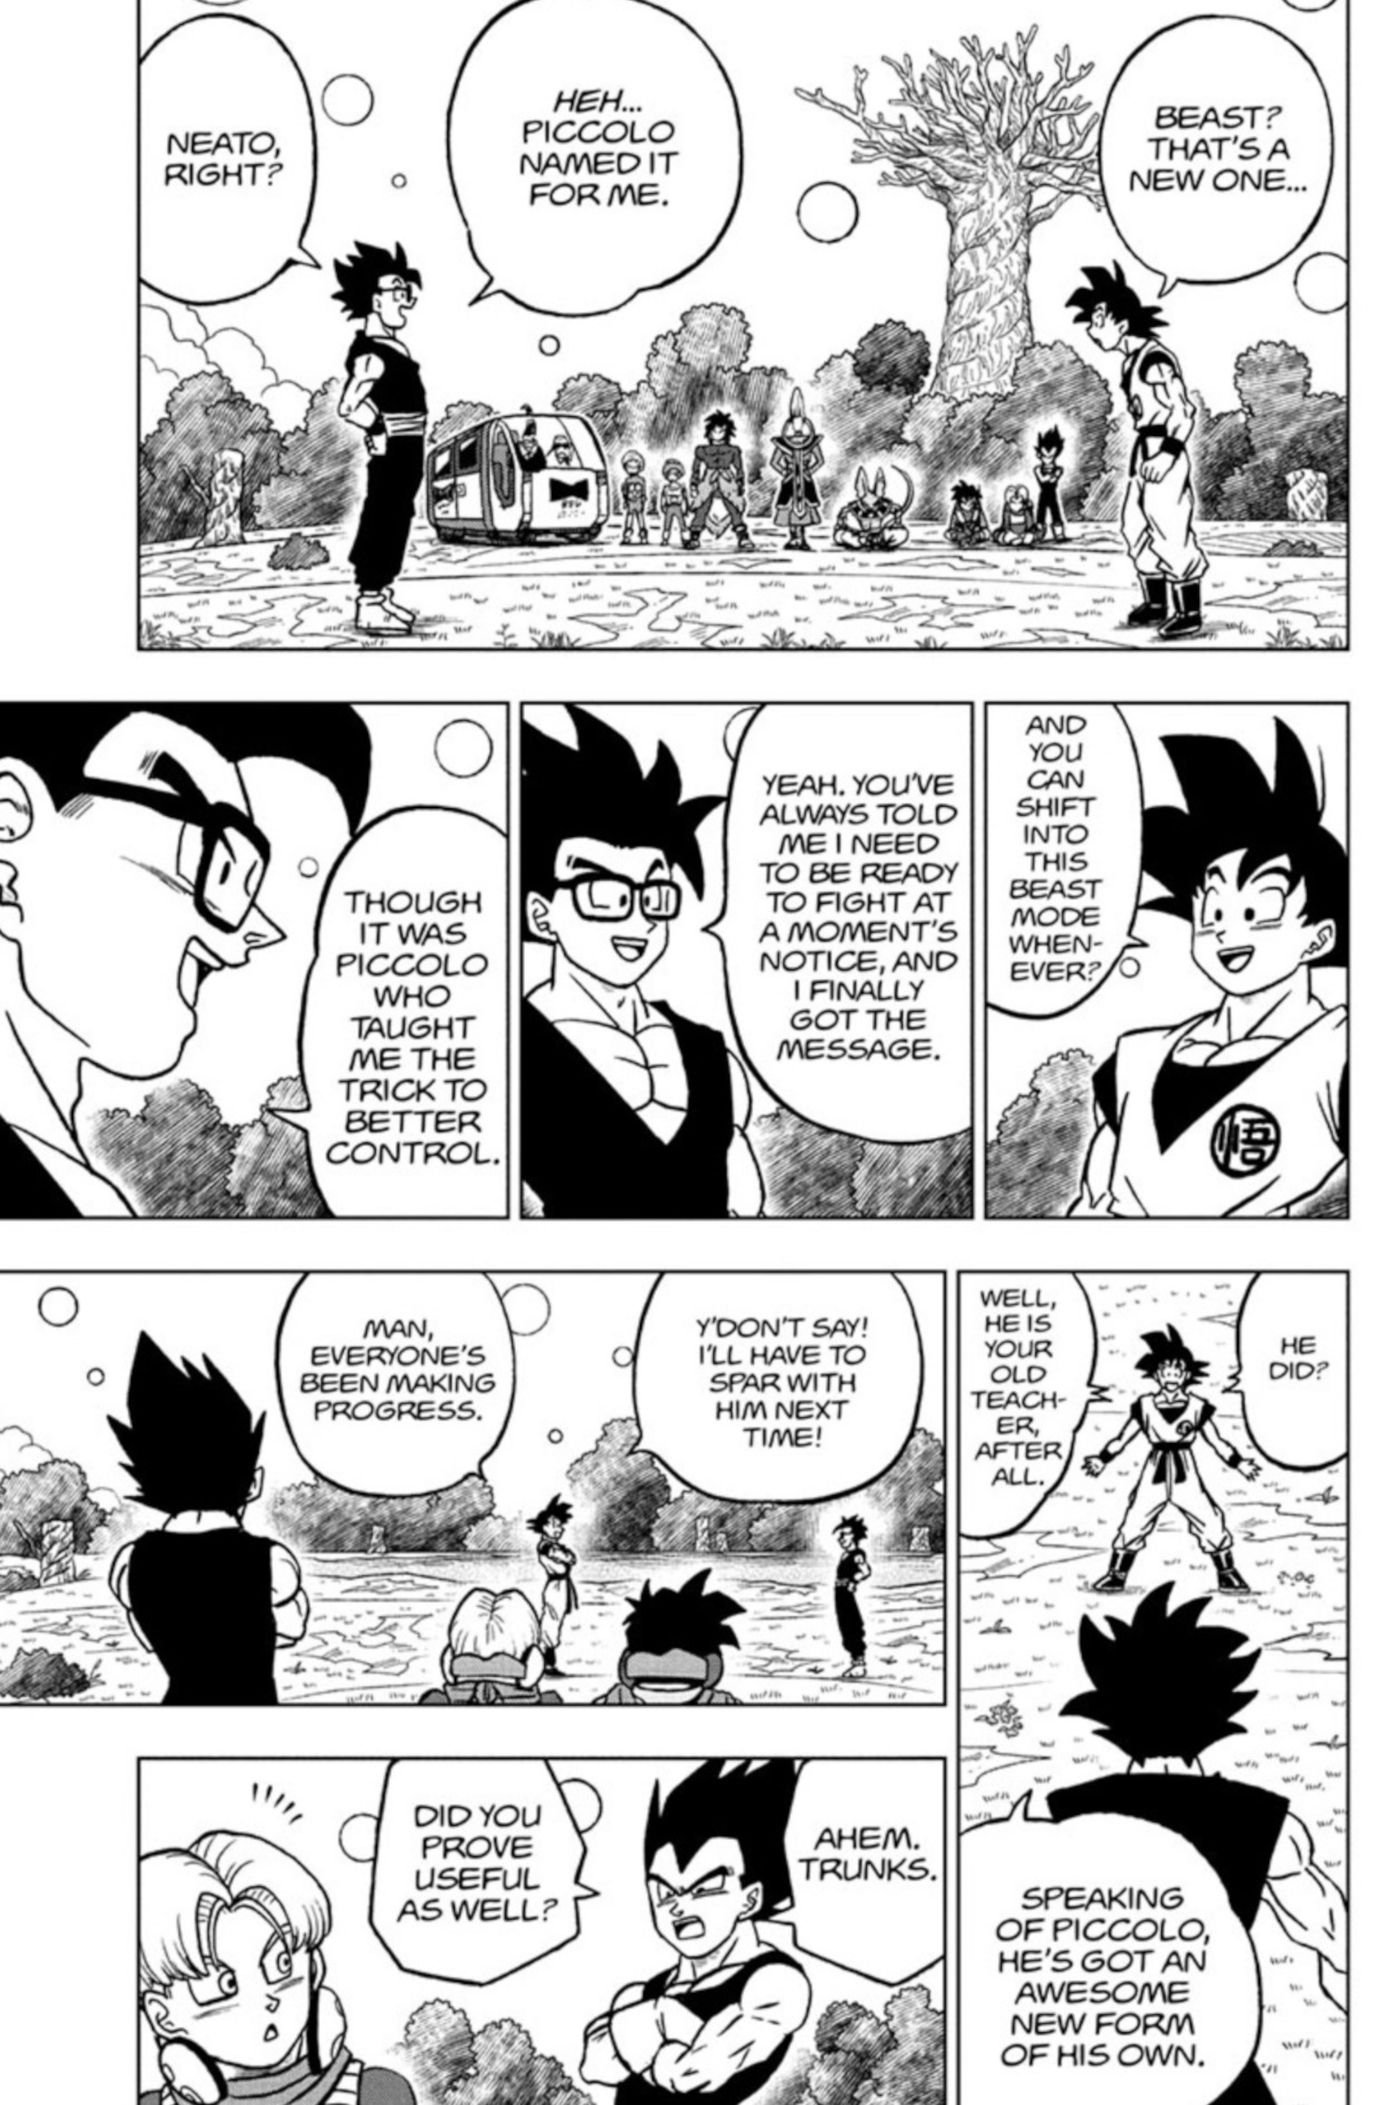 Painéis de mangá do capítulo 102 de Dragon Ball Super mostram Gohan explicando a Goku e Vegeta como ele desbloqueou o Modo Besta com a ajuda de Piccolo no mundo de Beerus.